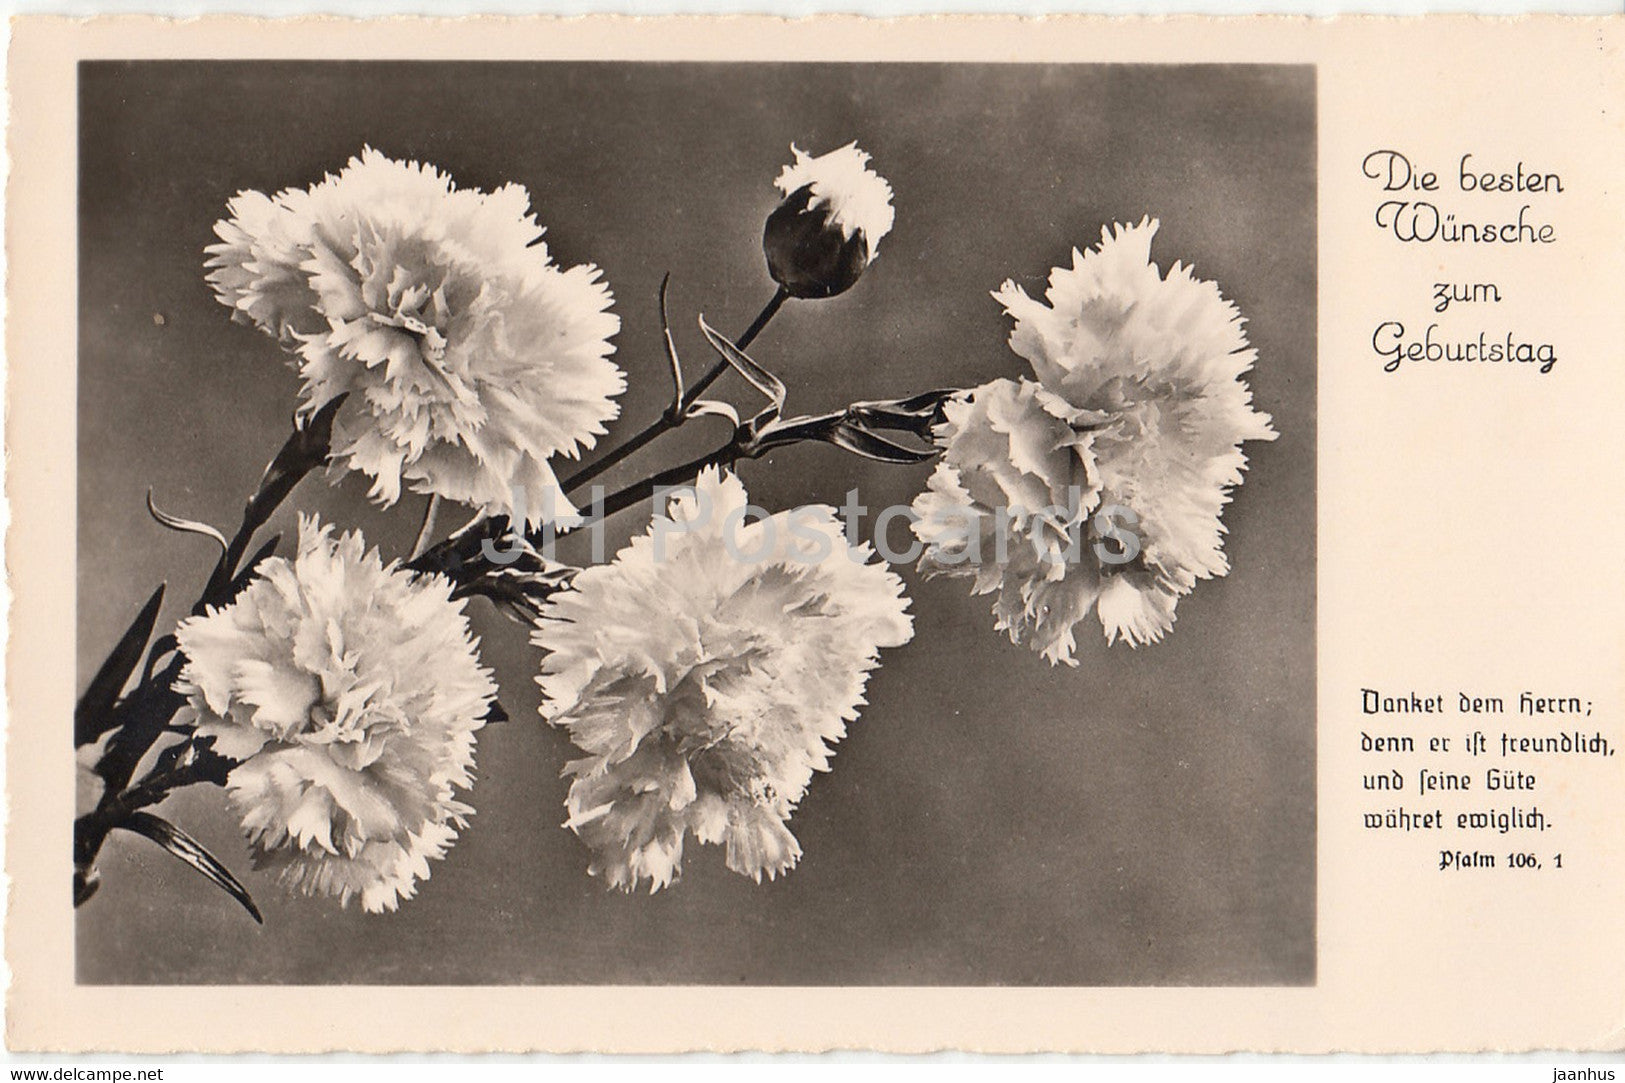 Birthday Greeting Card - Die Besten Wunsche zum Geburtstag - flowers - Amag 69164 - old postcard - Germany - used - JH Postcards